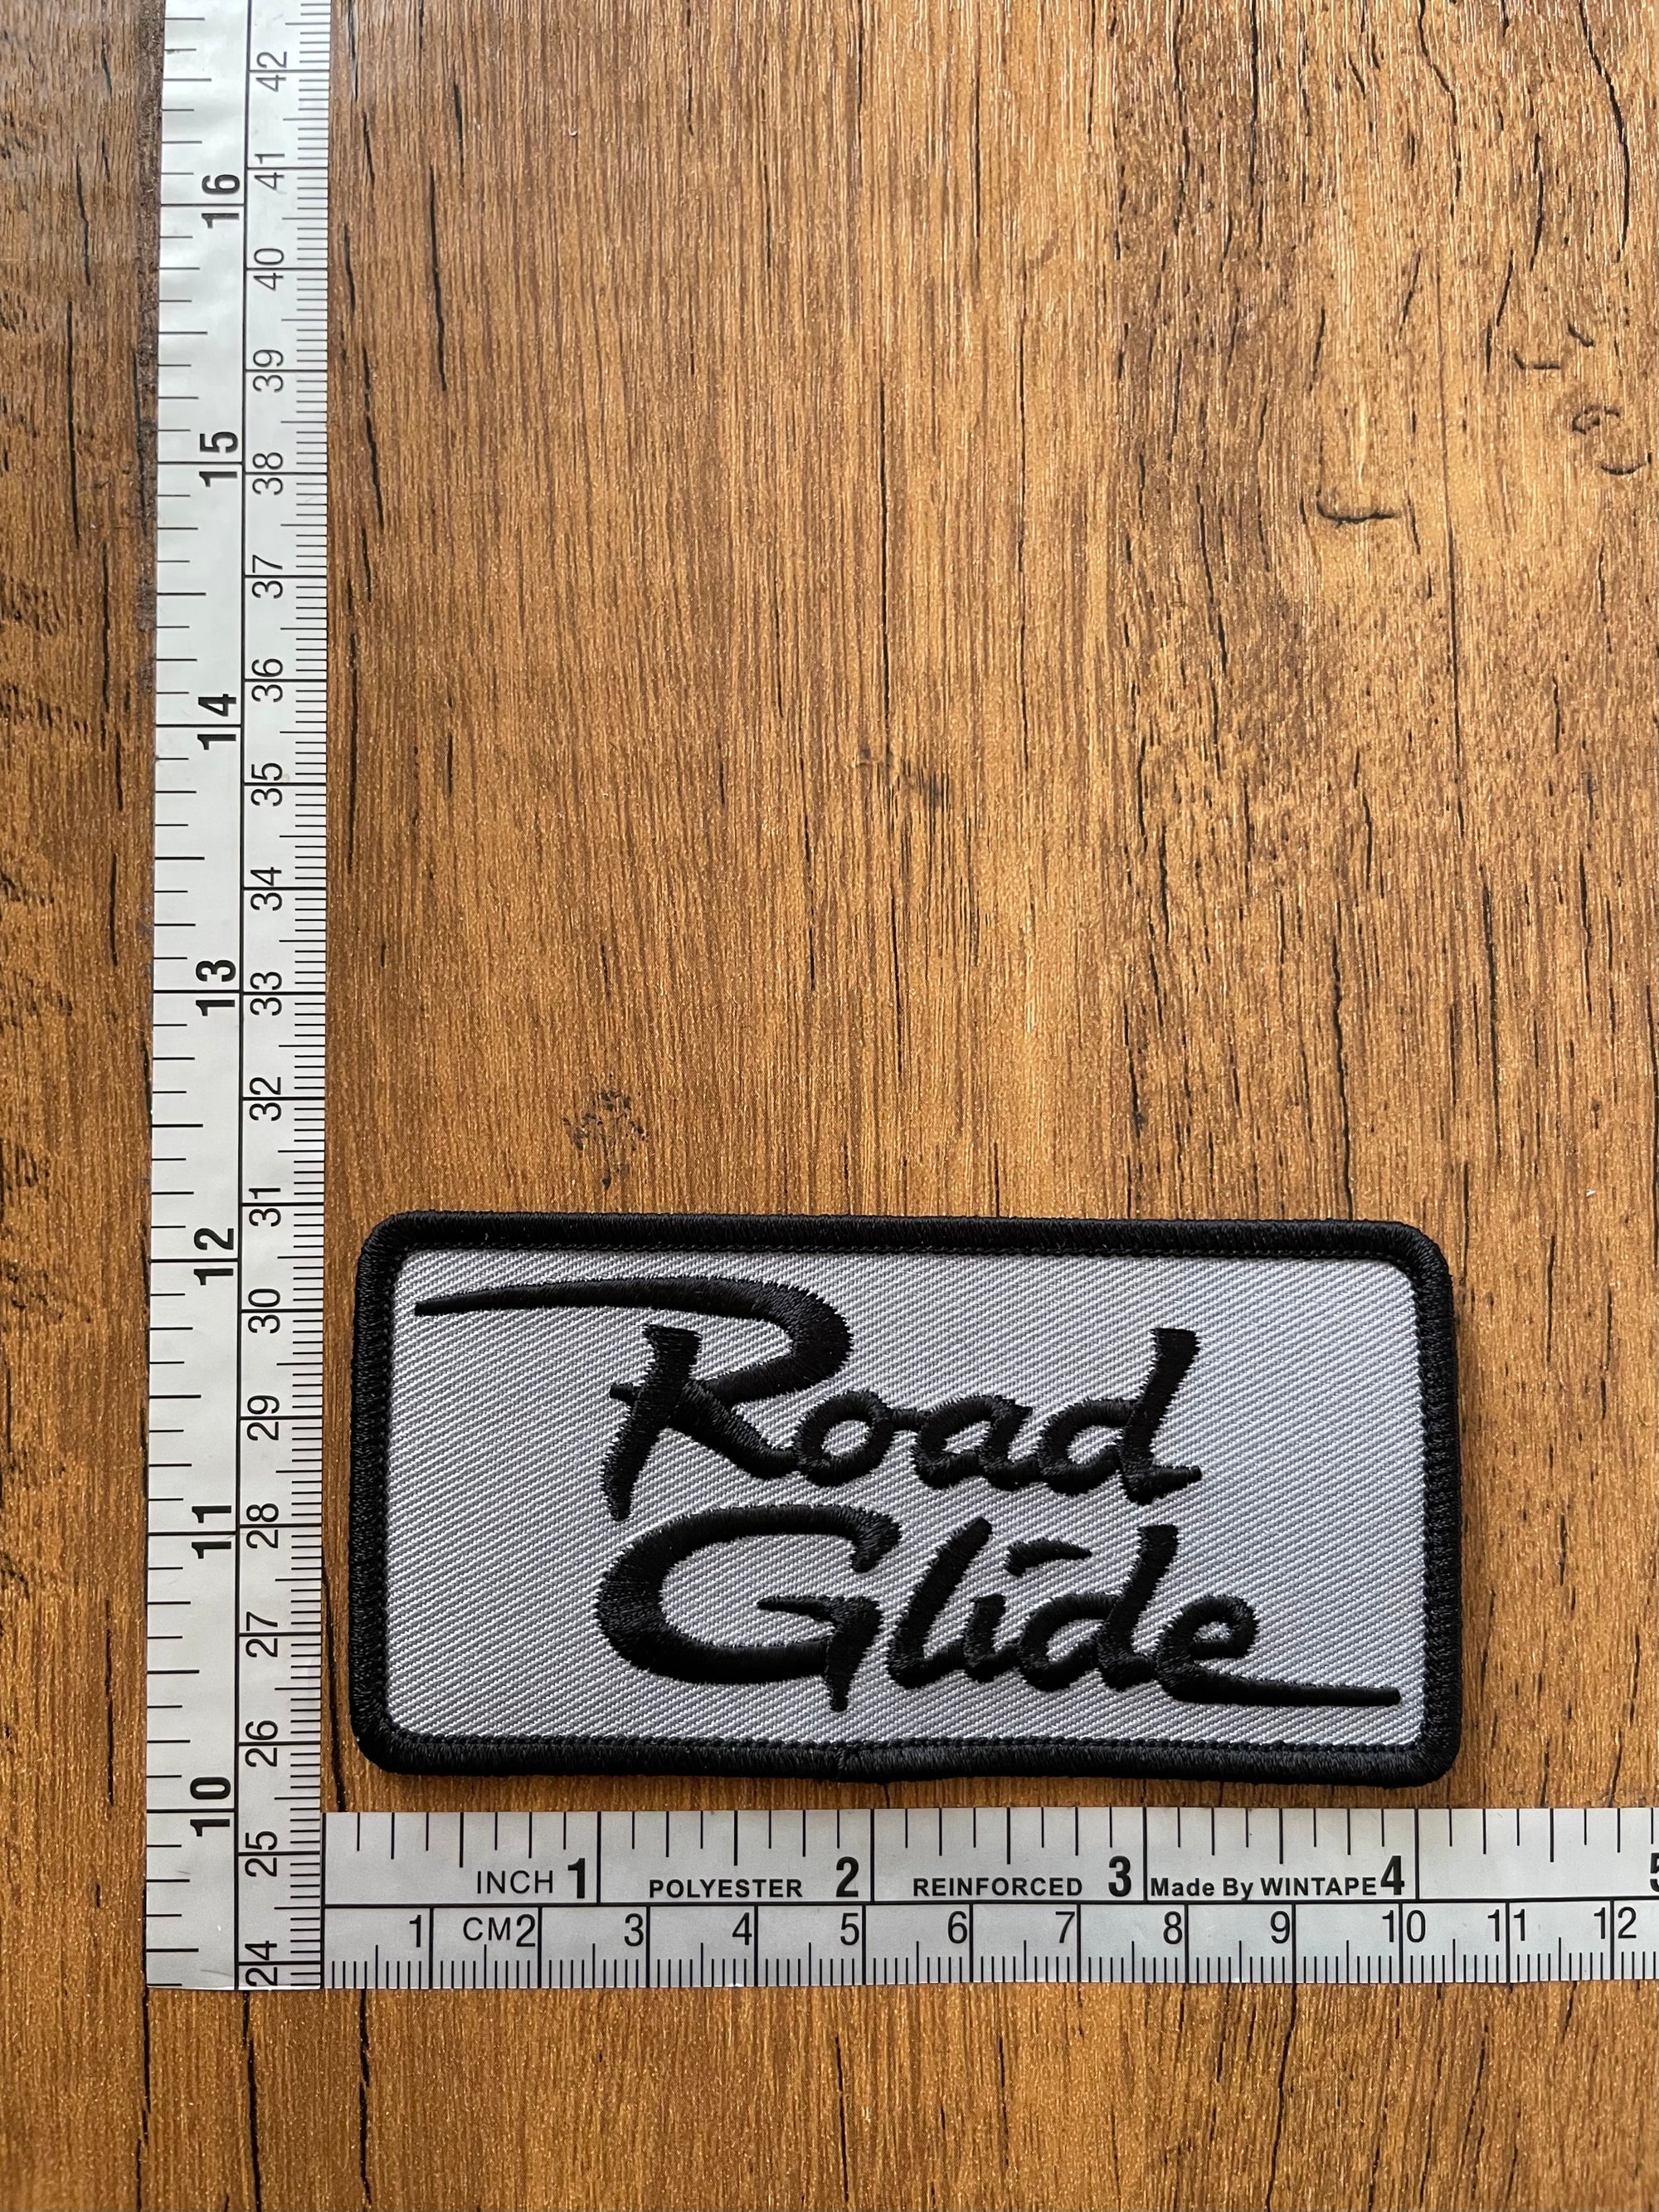 Road Glide